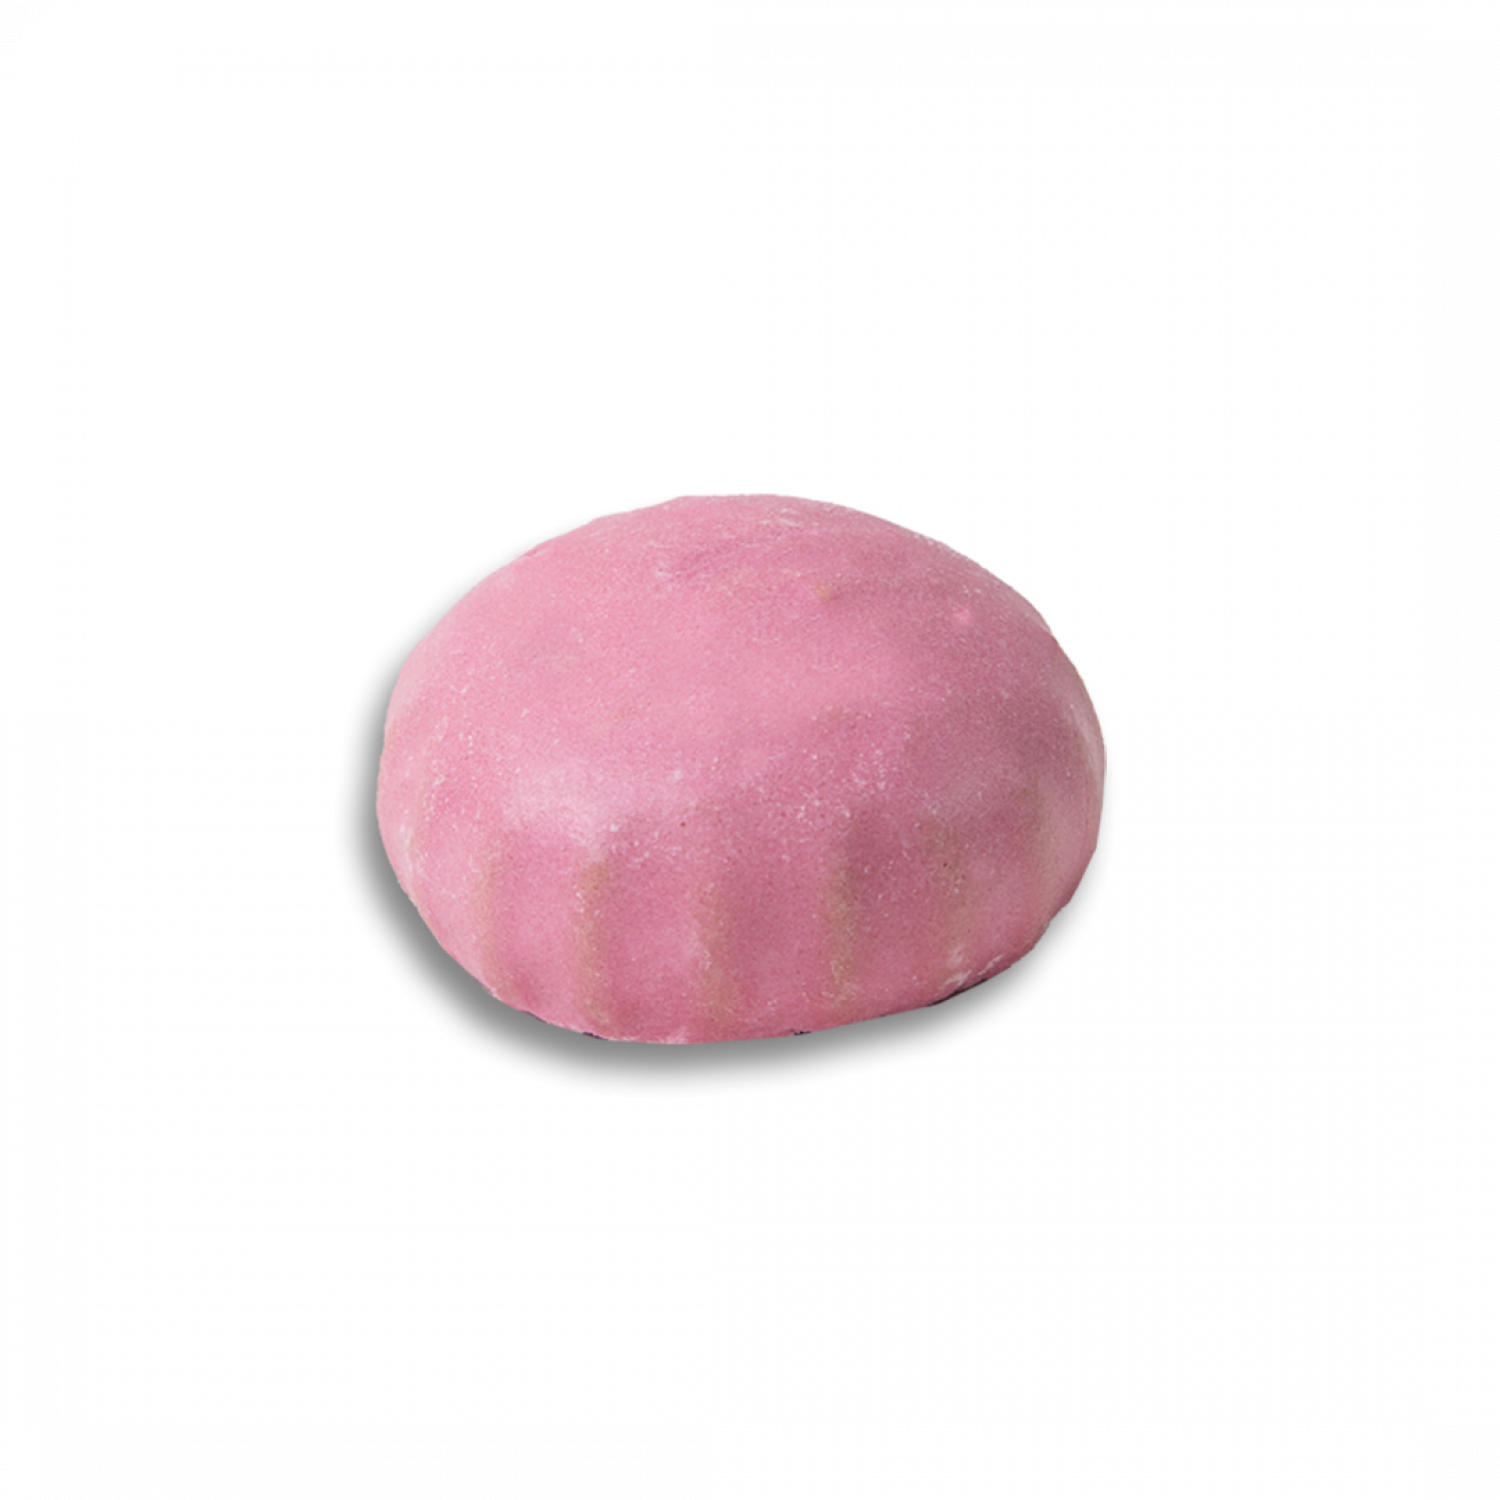 Пряники "Кочетовы сласти" в розовой сахарной глазури с вишнёвой начинкой, 25 г - Кондитерский комбинат "Кубань"